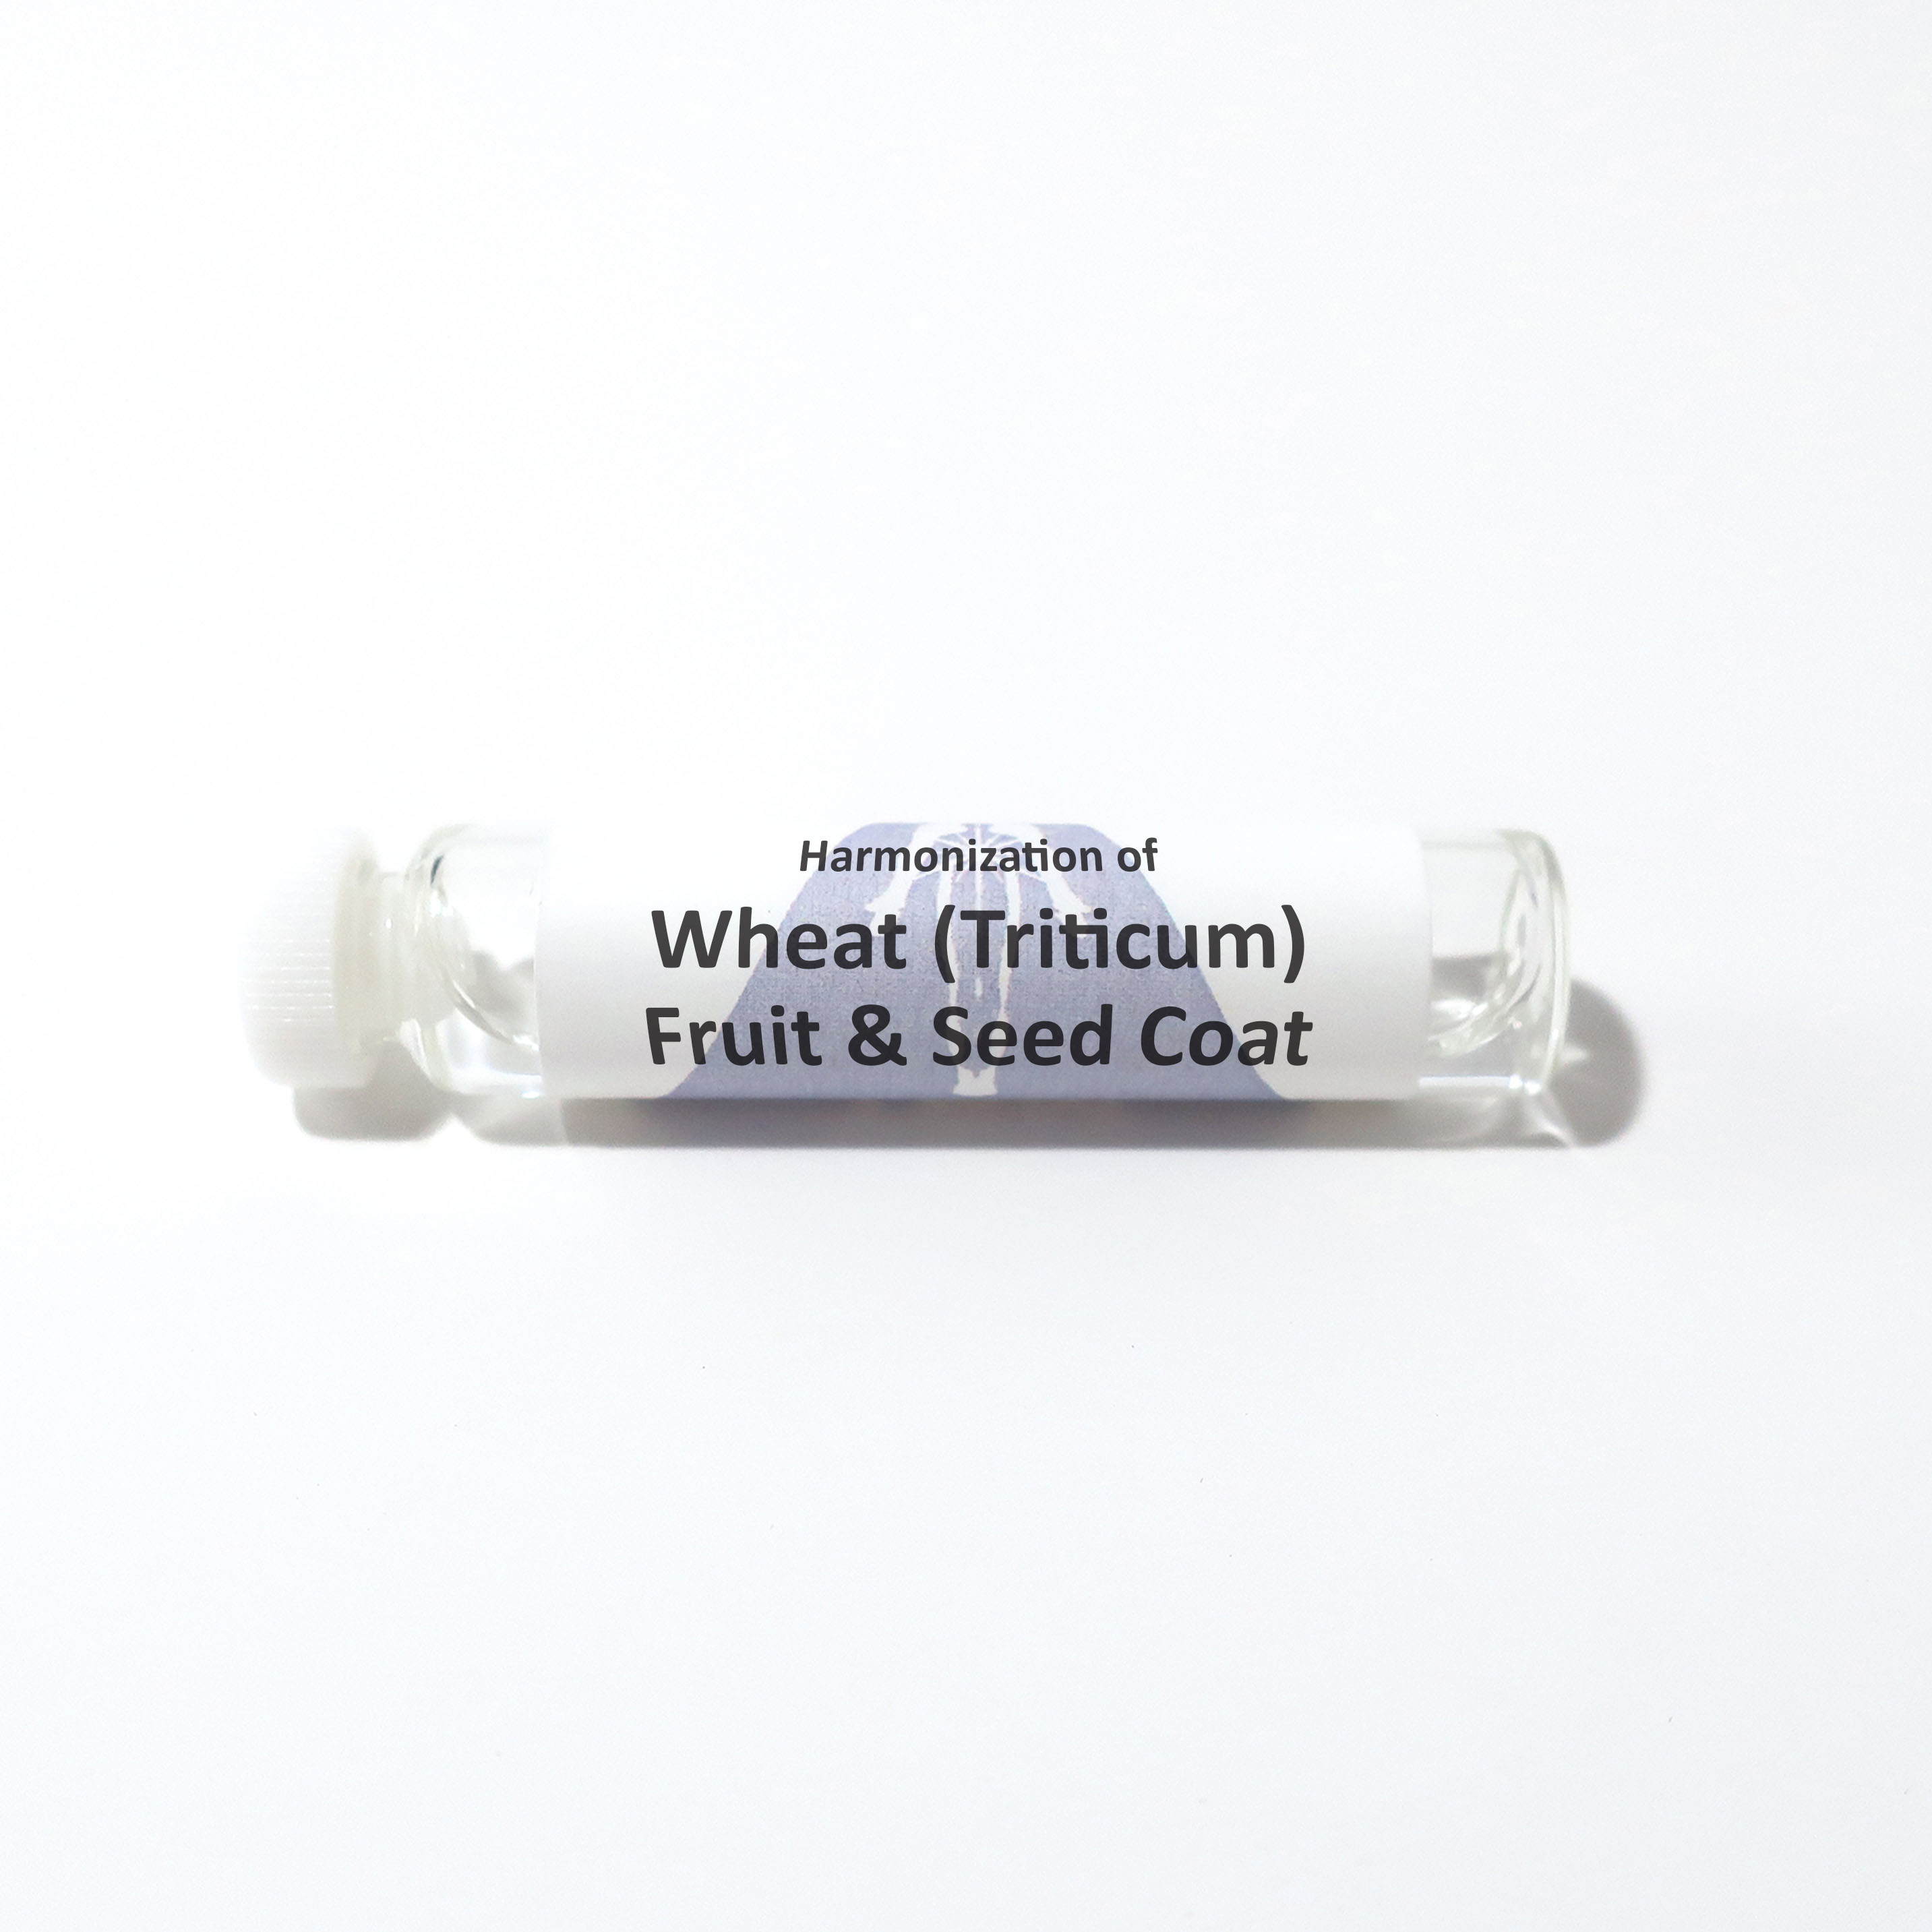 Wheat (Triticum) Fruit & Seed Coat